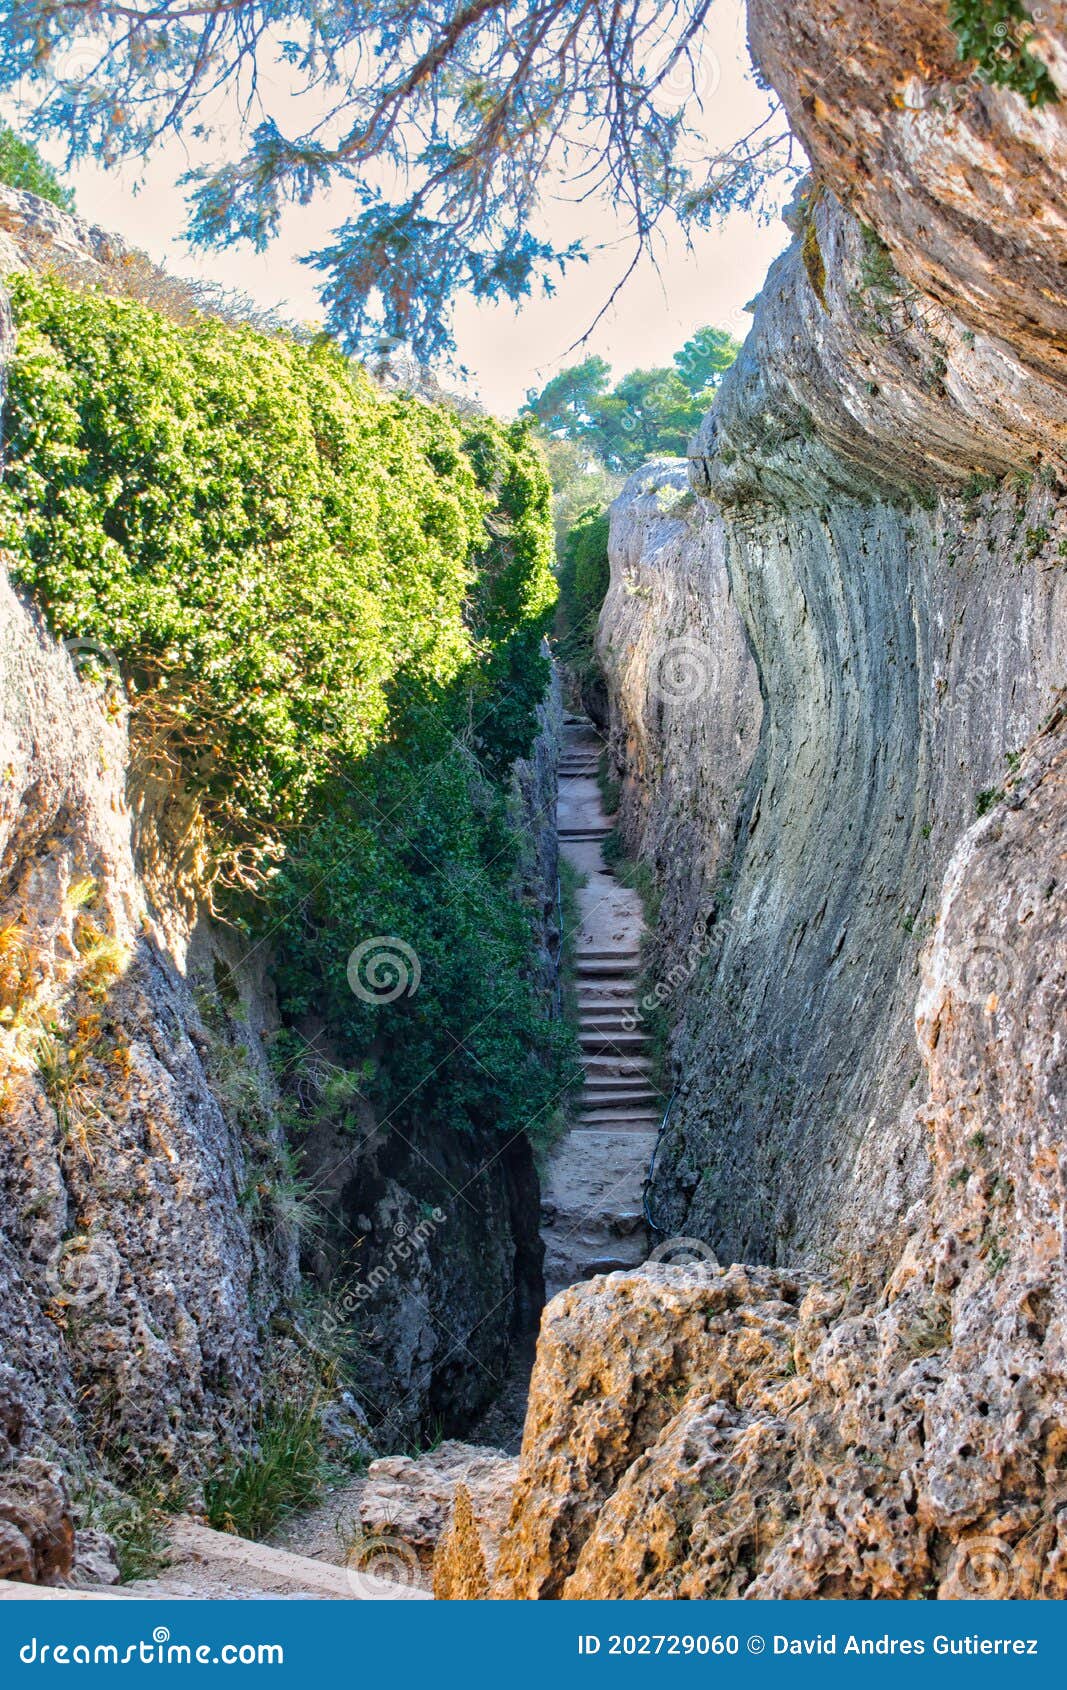 narrow corridor between rocky walls and with stairs, called el tobogan in la ciudad encantada de cuenca, spain